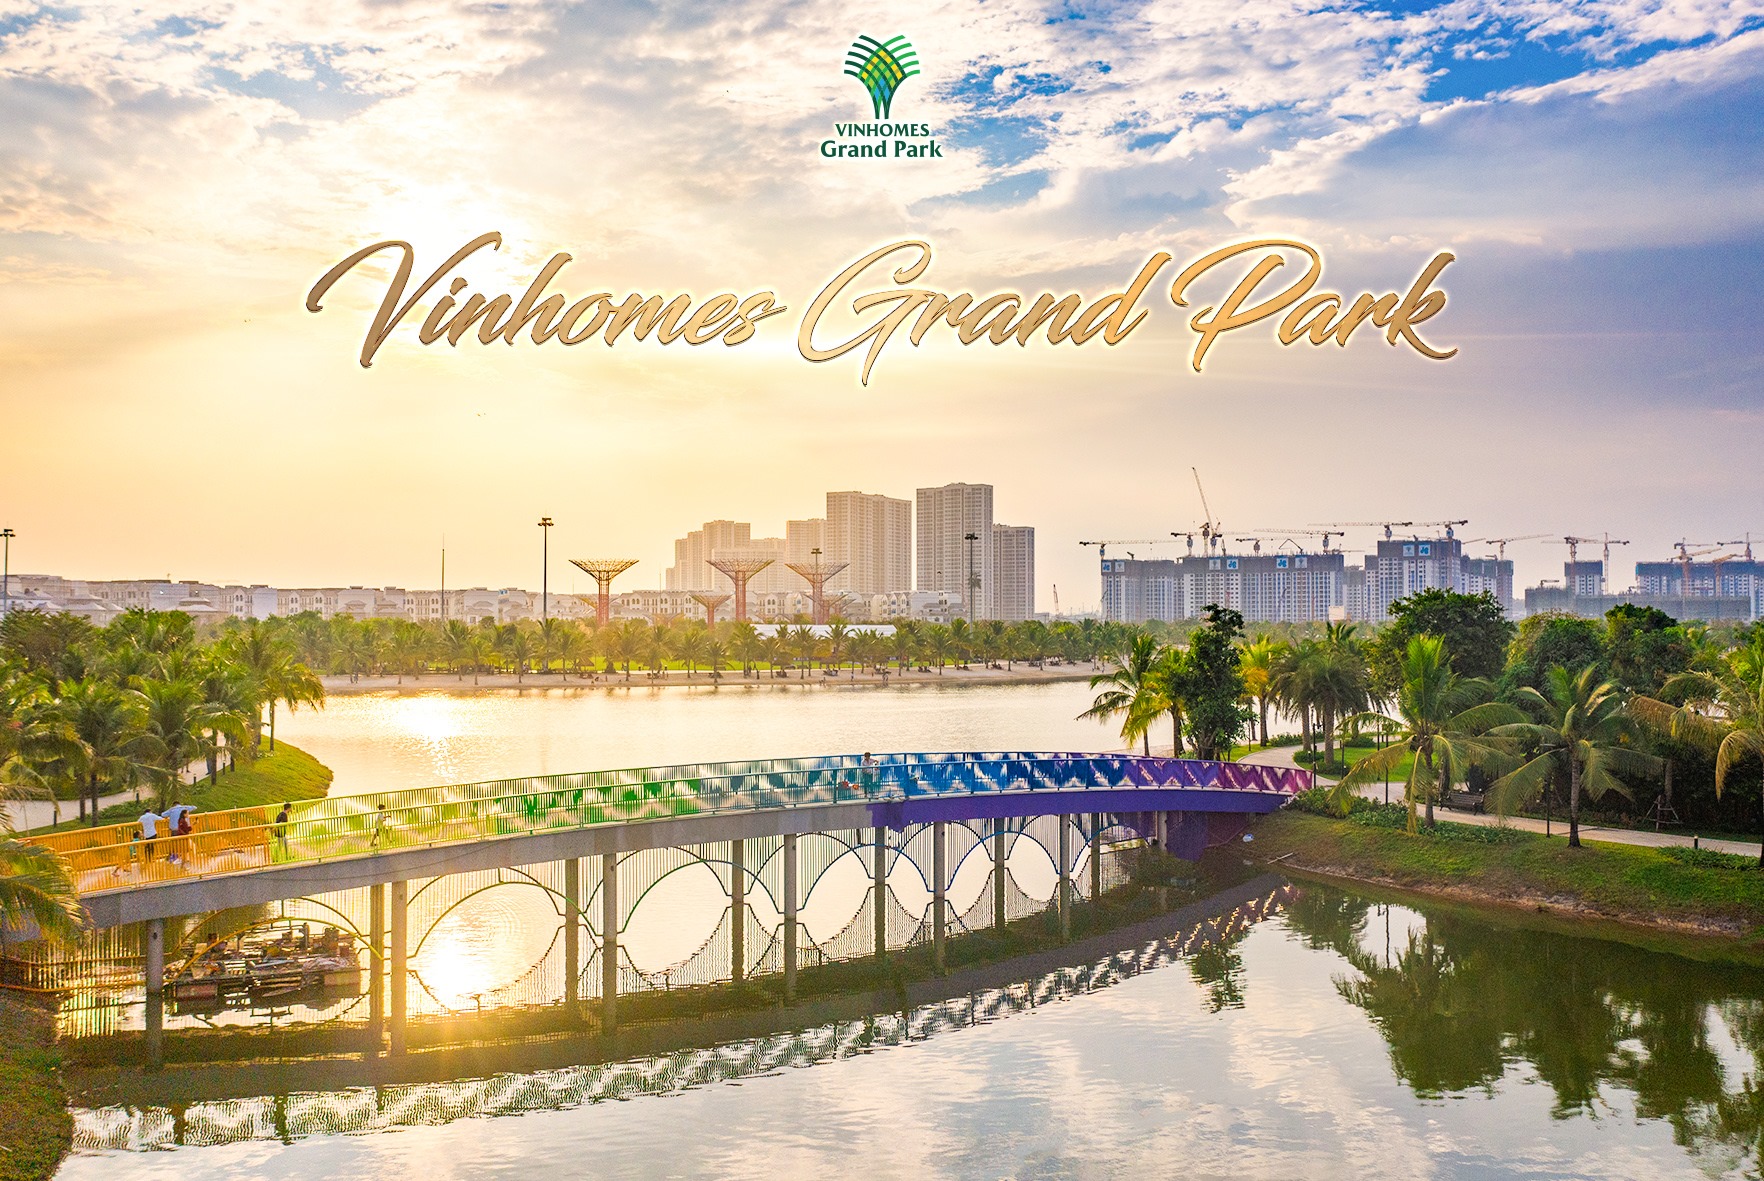 Vinhomes Grand Park là khu đại đô thị thông minh được đầu tư và phát triển bởi tập đoàn nổi tiếng VinGroup